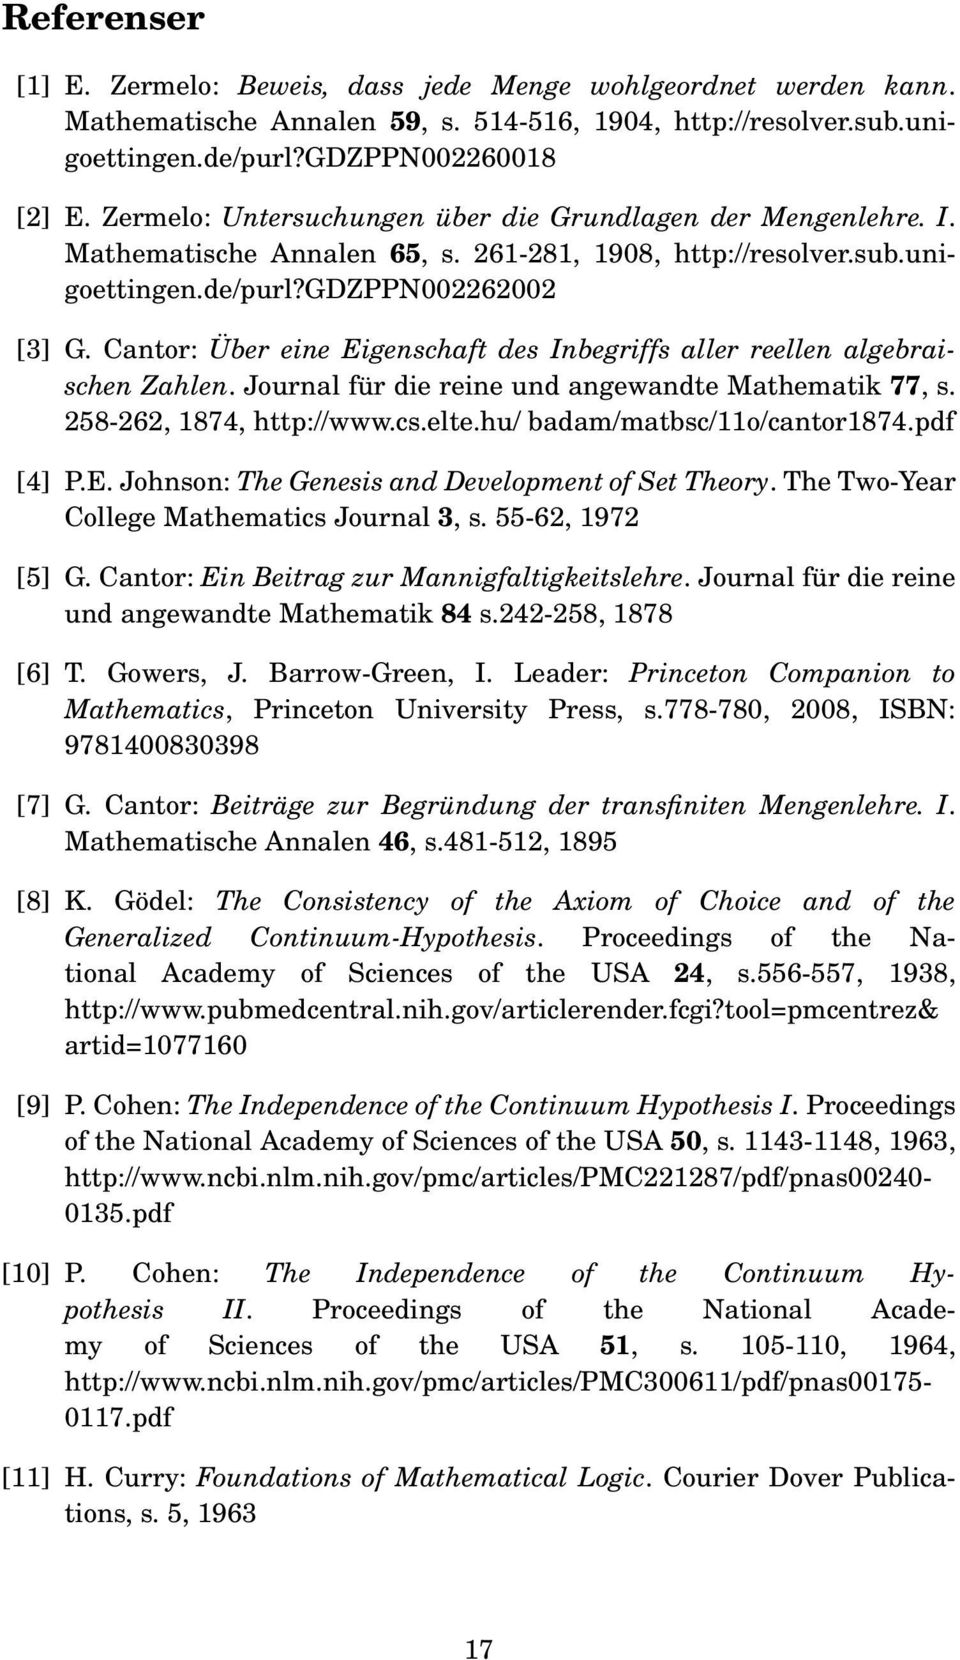 Cantor: Über eine Eigenschaft des Inbegriffs aller reellen algebraischen Zahlen. Journal für die reine und angewandte Mathematik 77, s. 258-262, 1874, http://www.cs.elte.